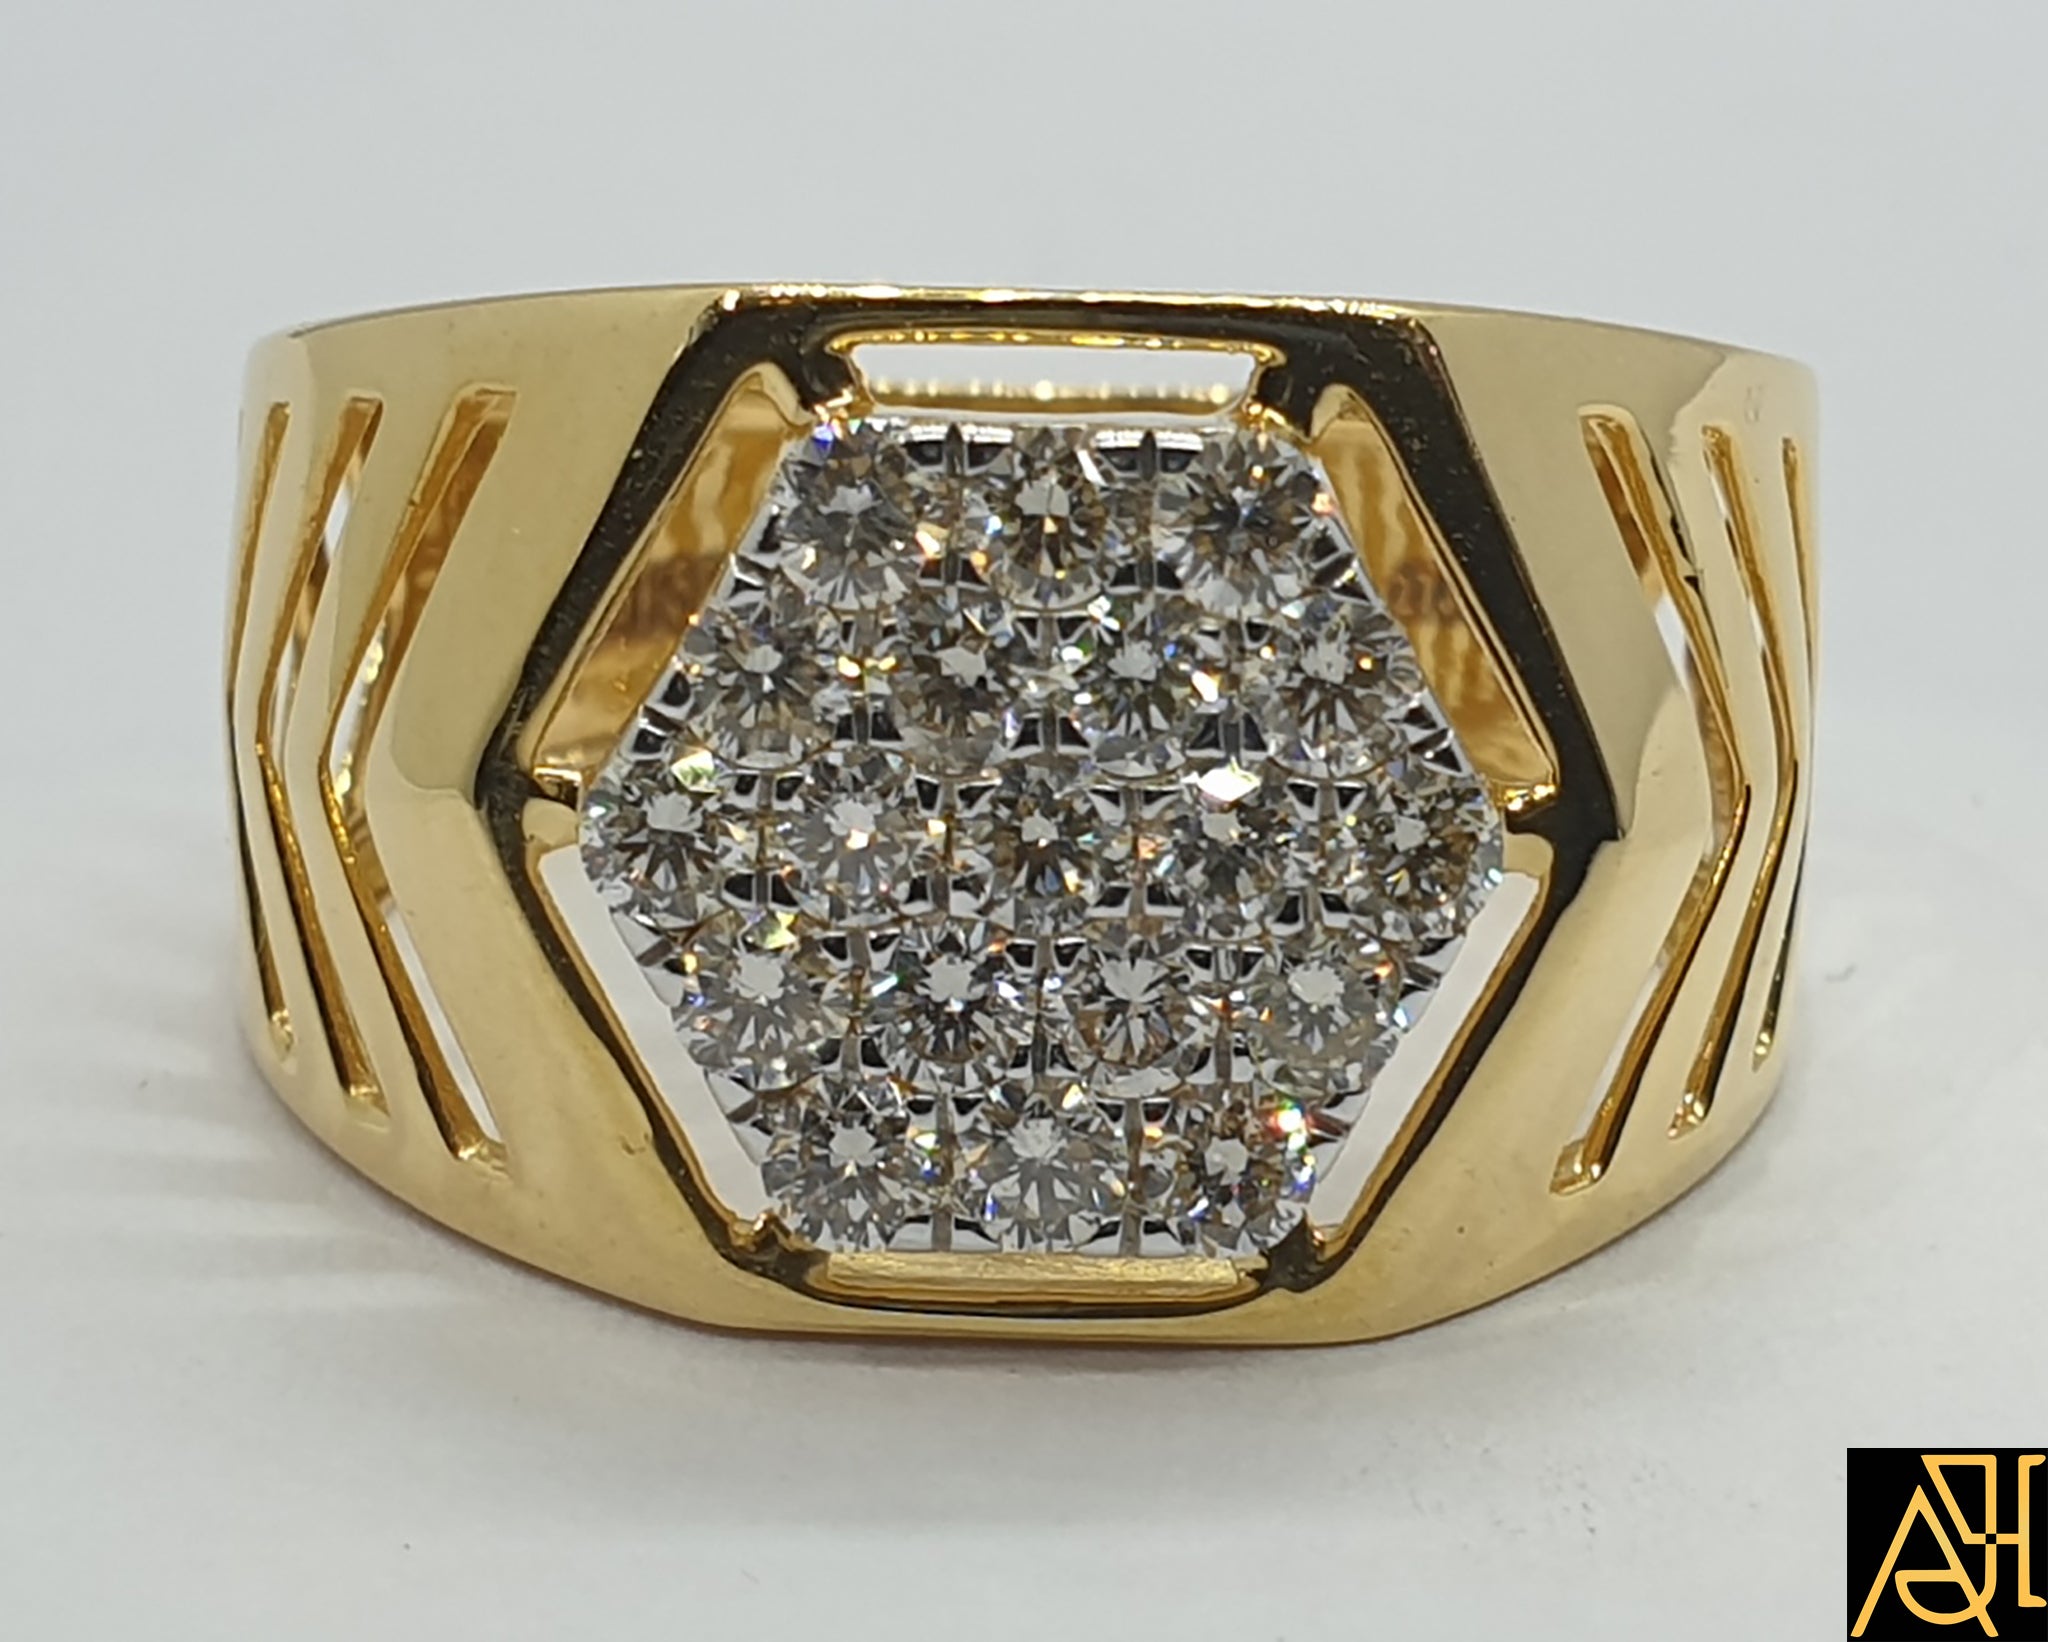 Diamond Rings Designs for Him - Dhanalakshmi Jewellers